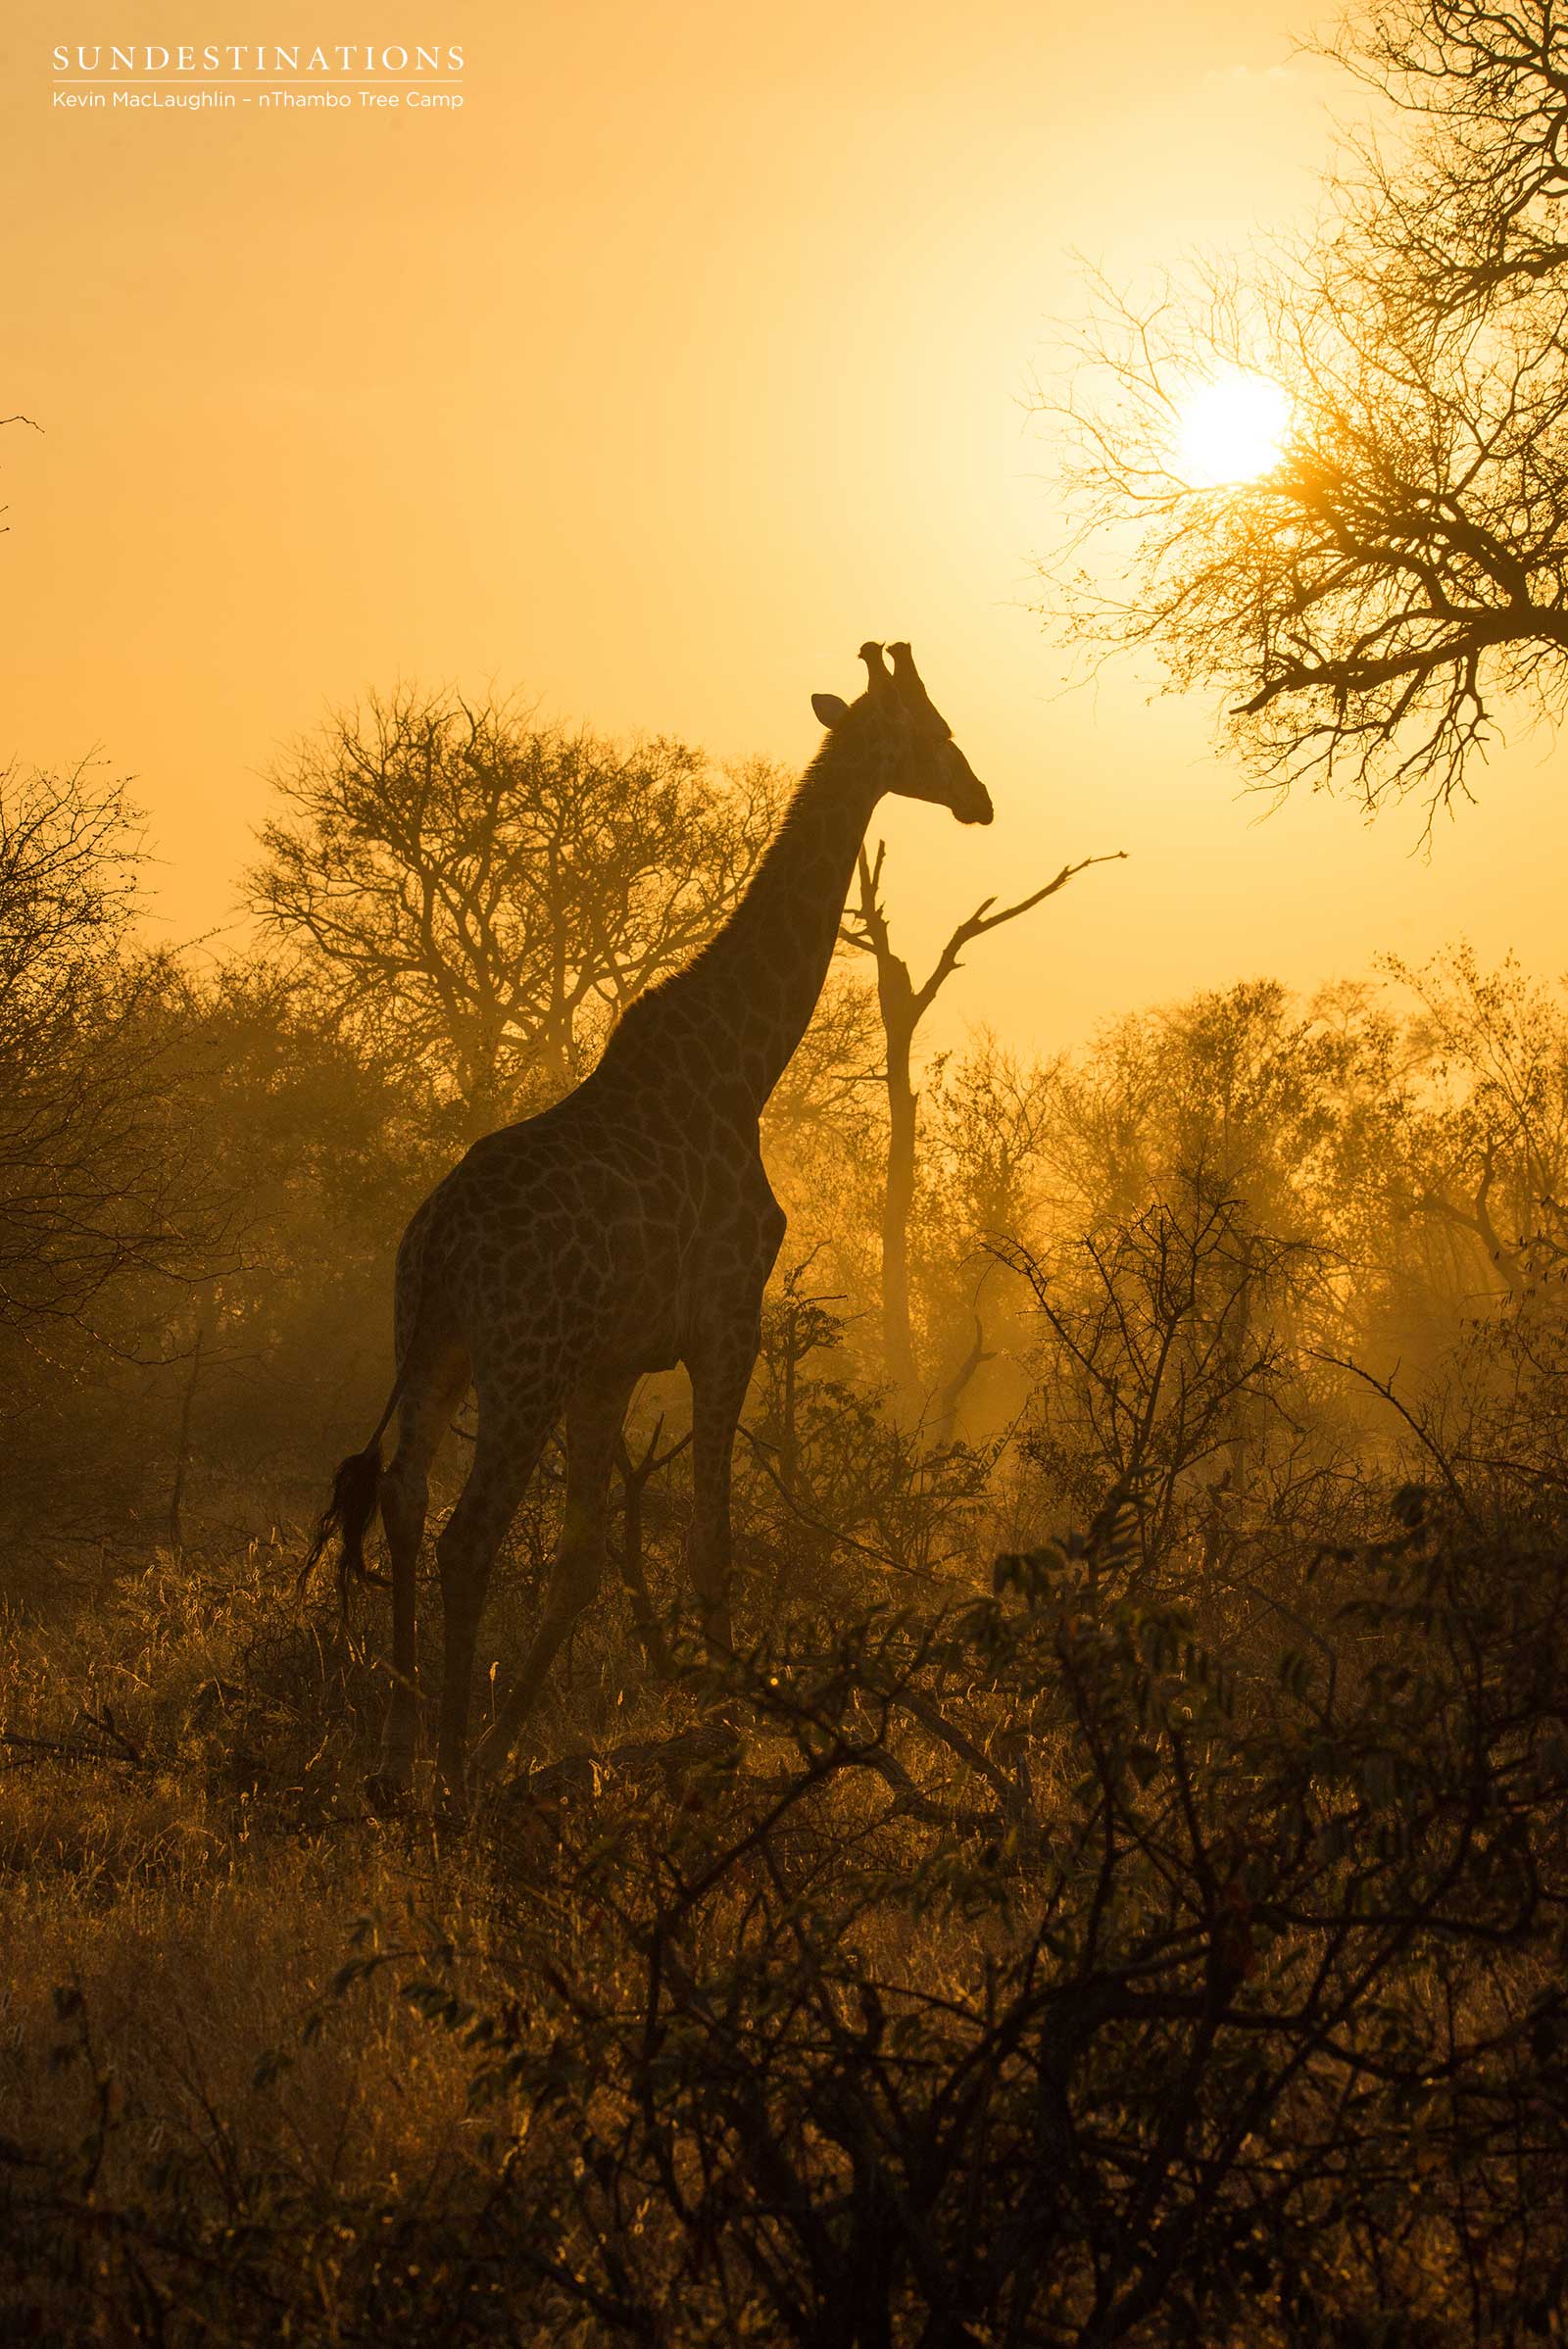 Giraffe in the Hazy Golden Light